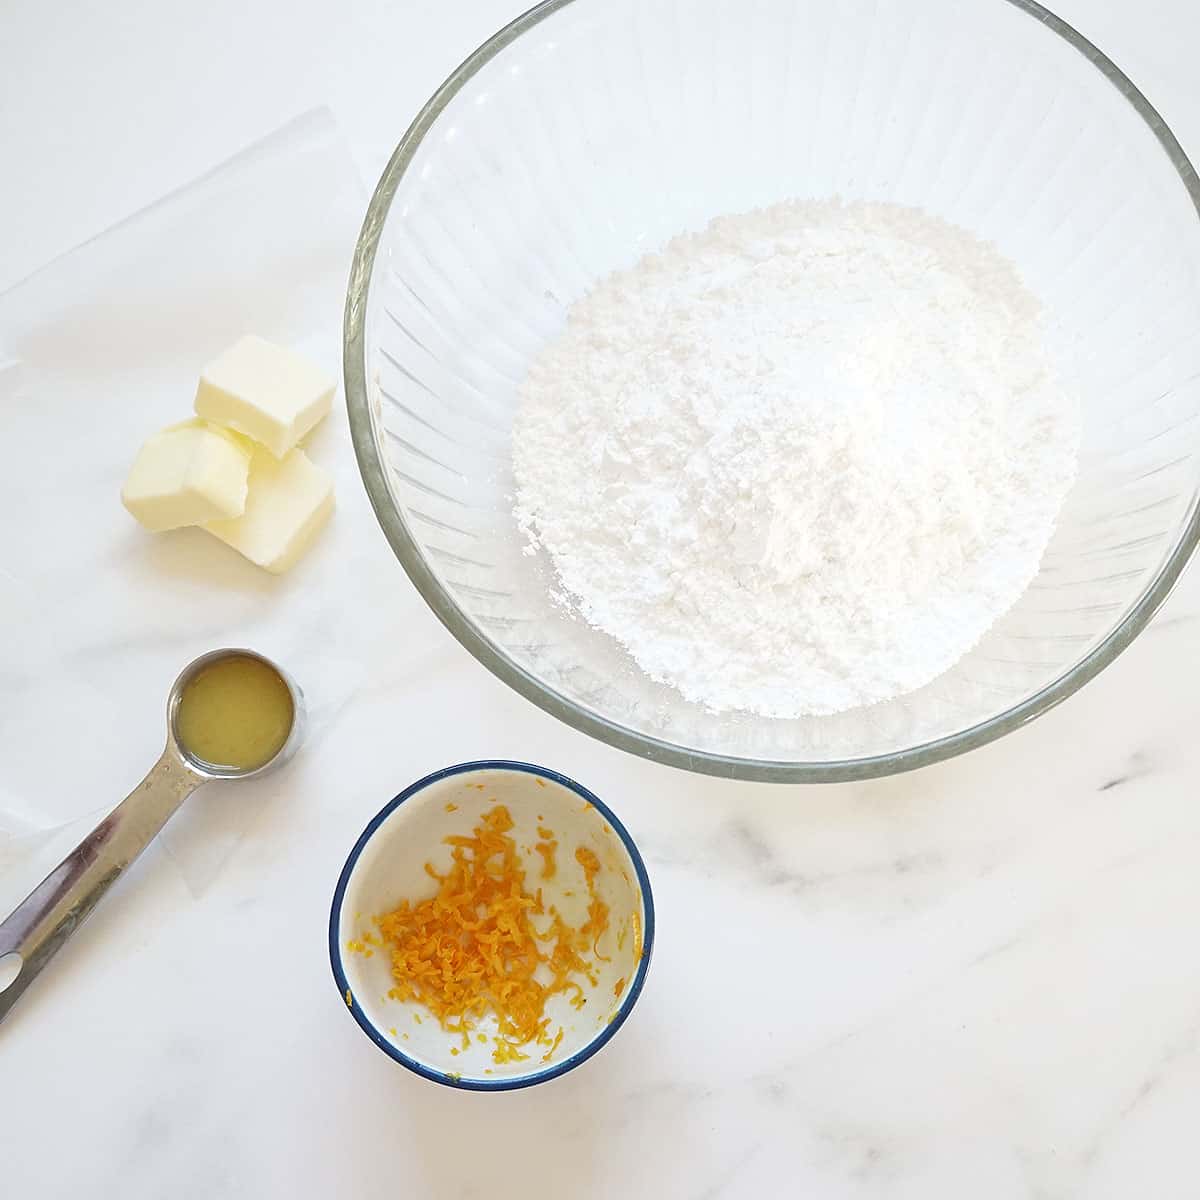 ingredients for orange butter icing: butter, orange juice, confectioner's sugar, orange zest 